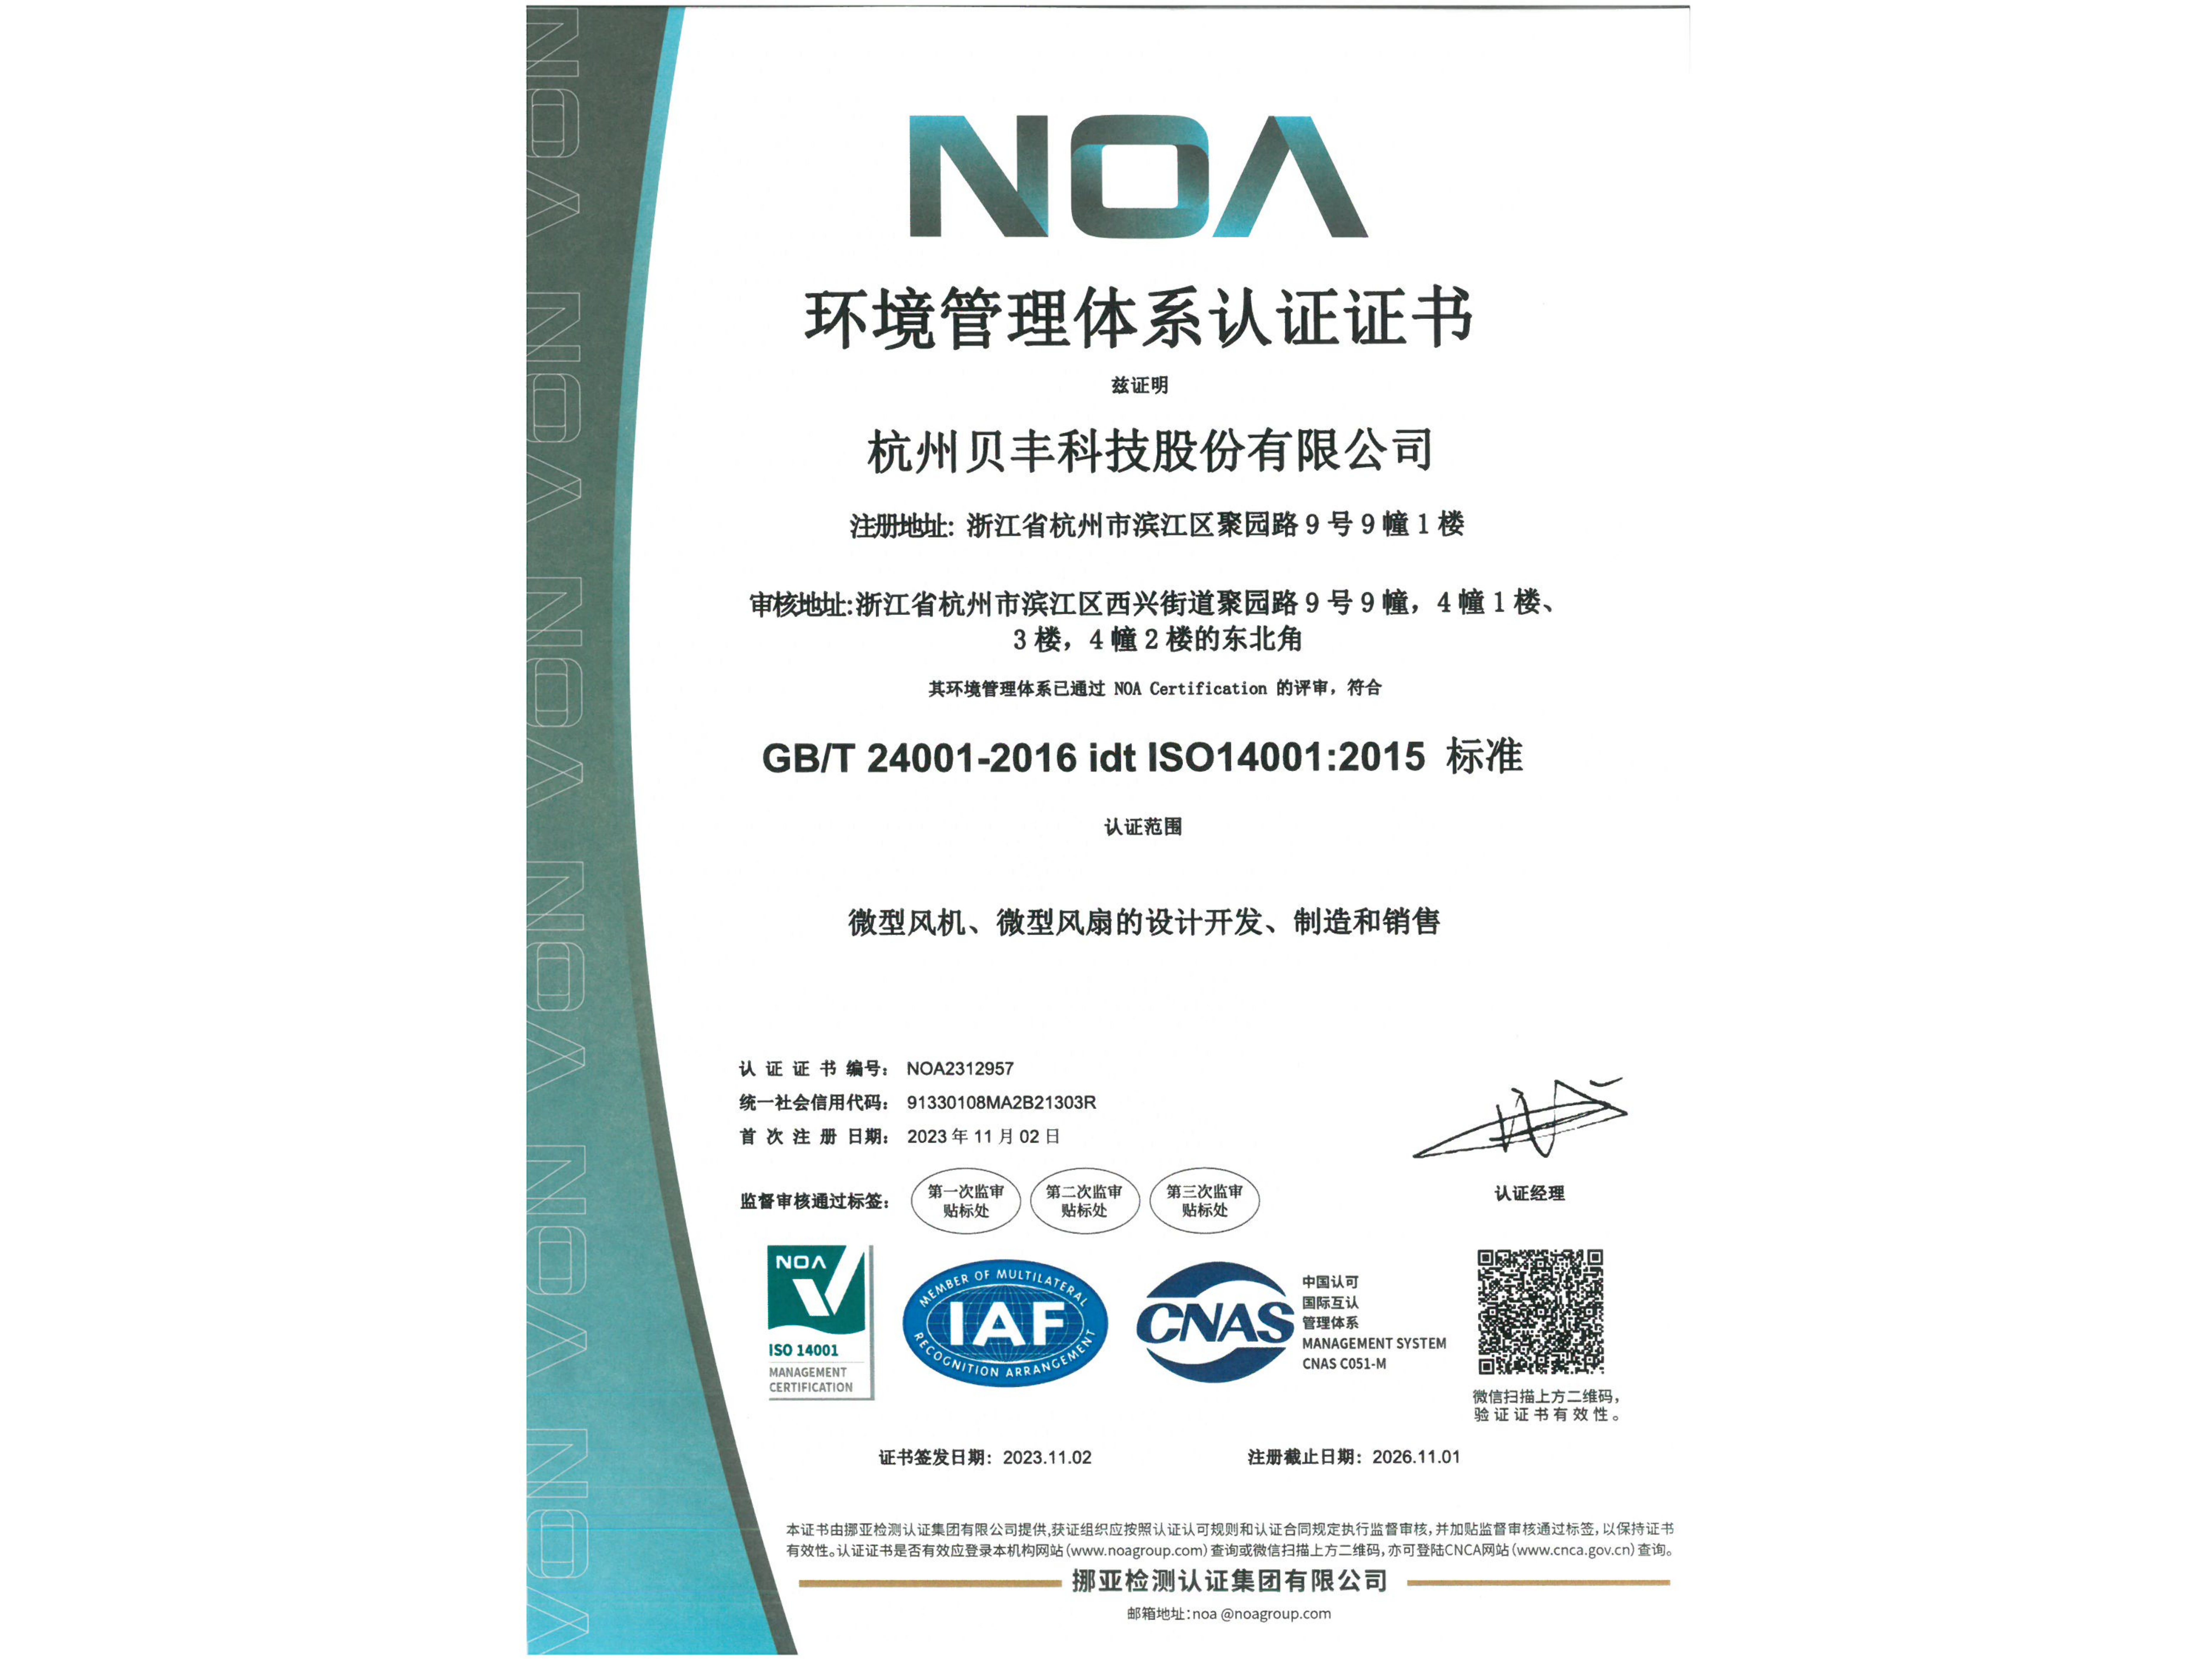 贝丰科技获得 ISO14001:2015 标准认证